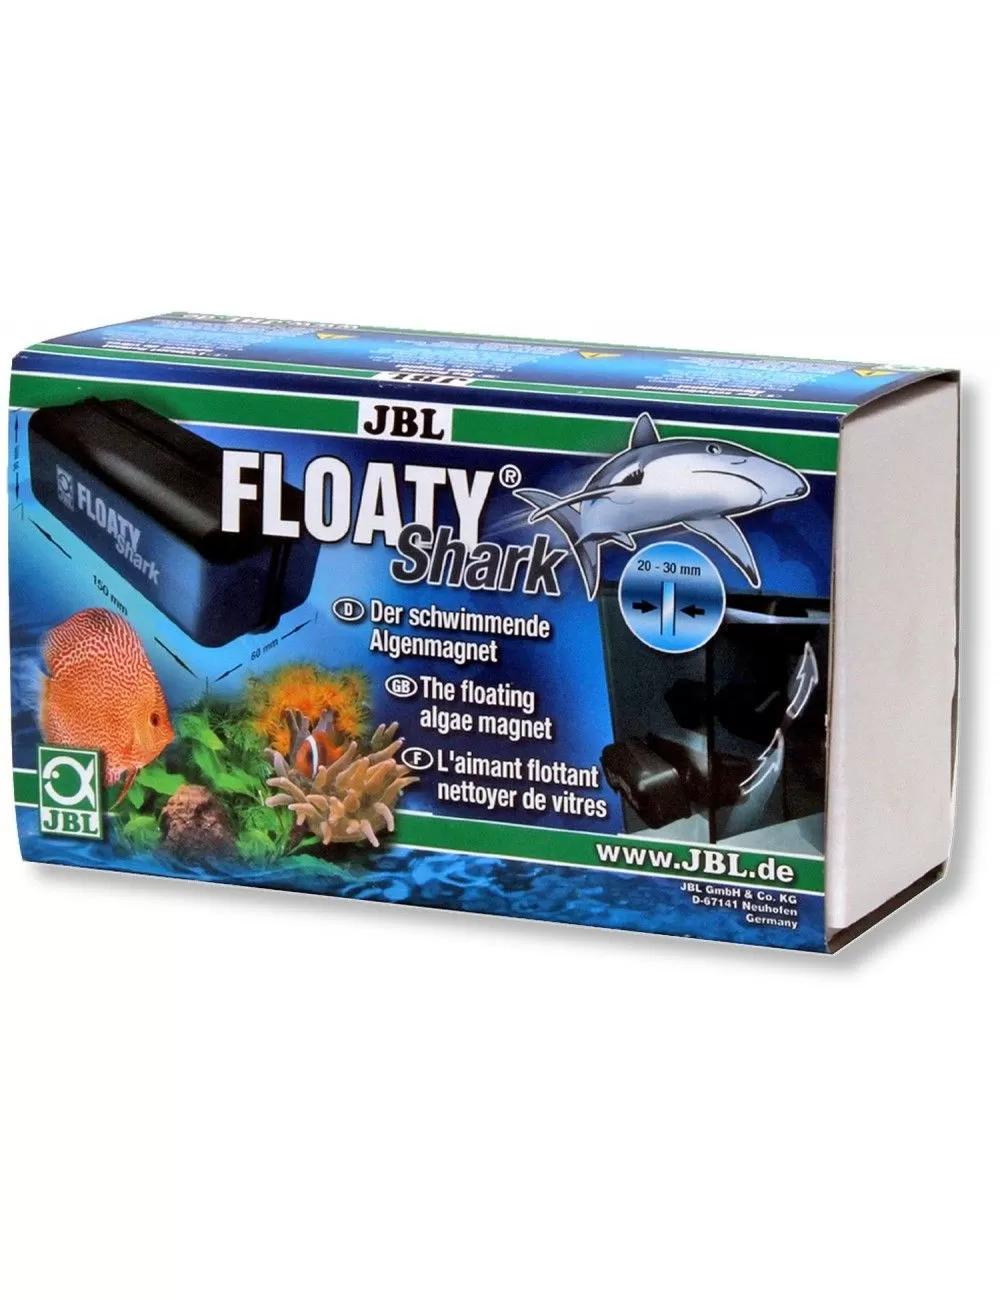 JBL - Floaty Shark - Imán limpiador flotante - Hasta 30 mm